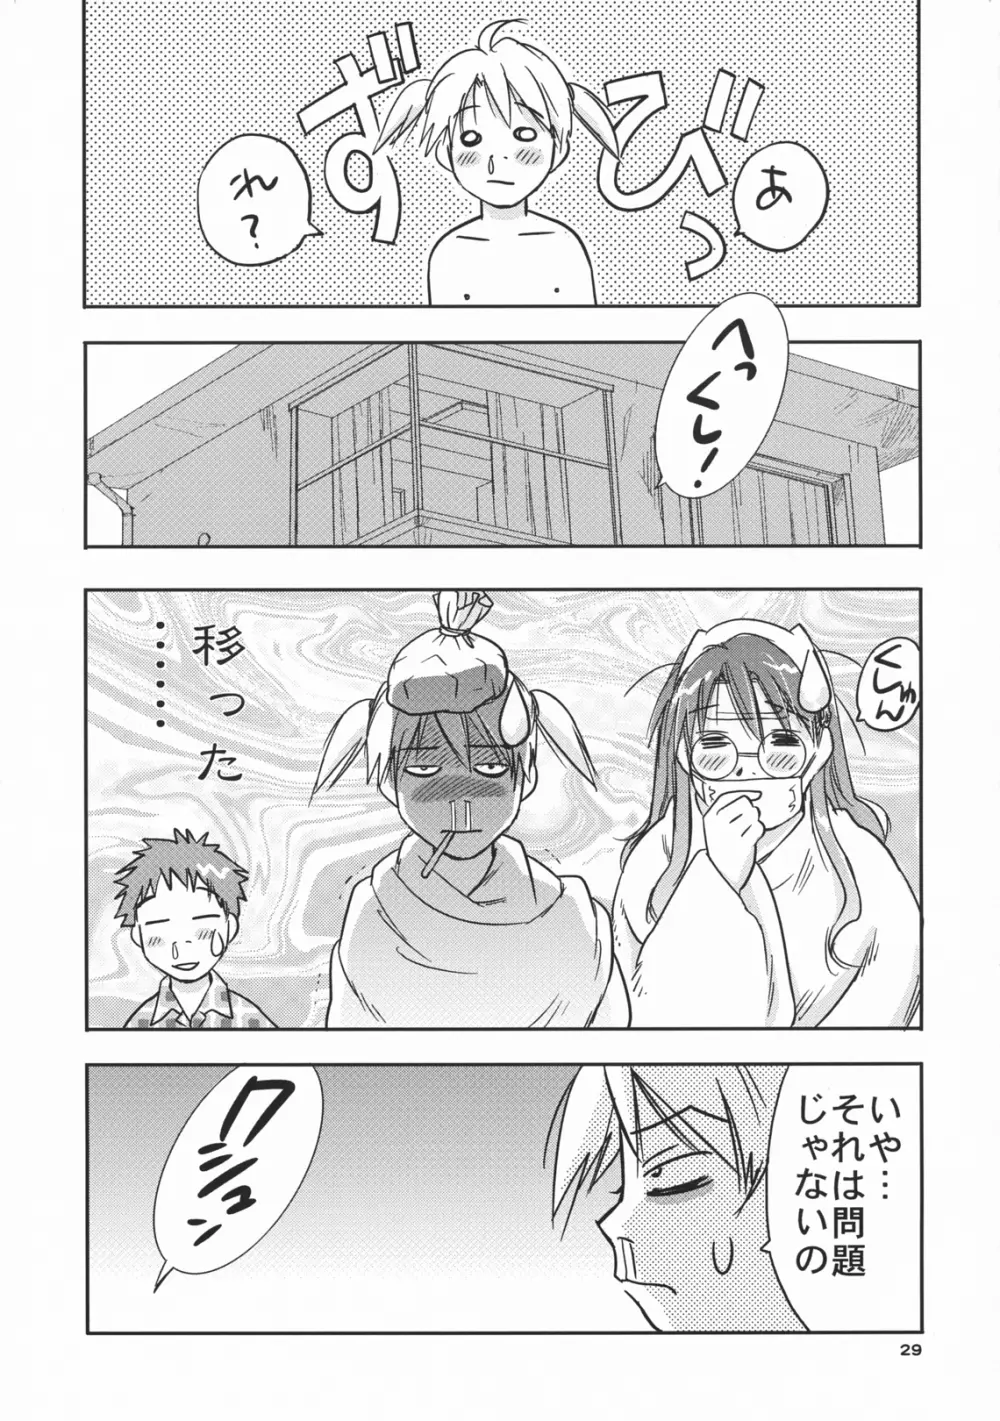 吟醸・白雪 Ginjoh Shirayuki 28ページ